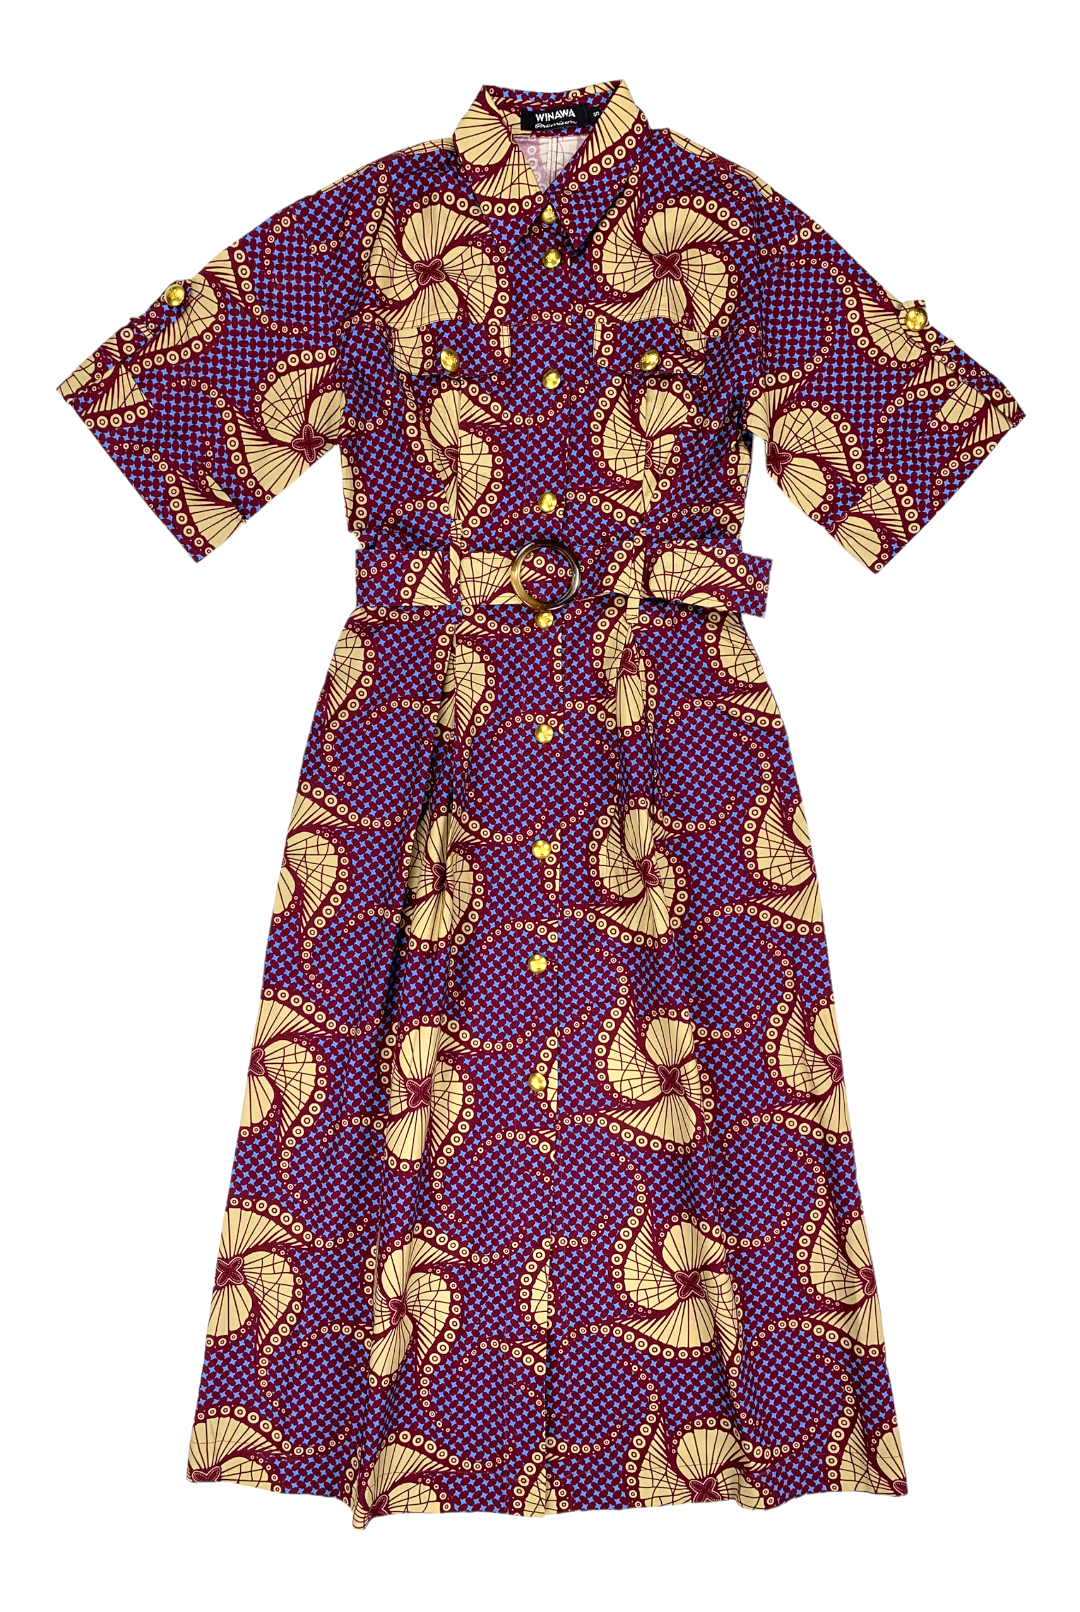 AFRICAN DRESS SHIRT